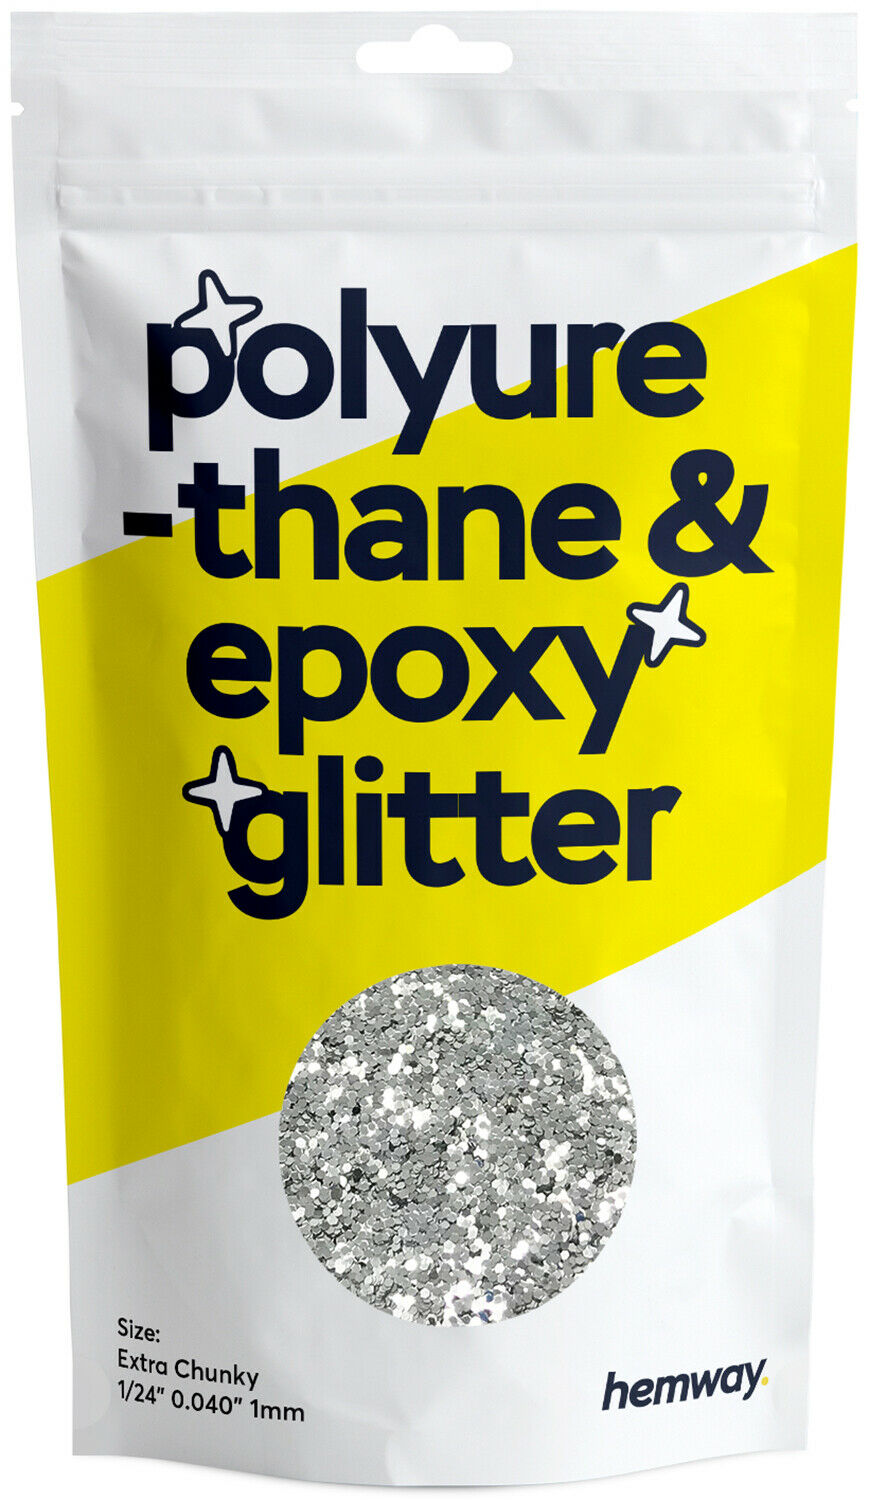 Hemway Polyurethane & Epoxy Resin Glitter - Extra Chunky 1/24